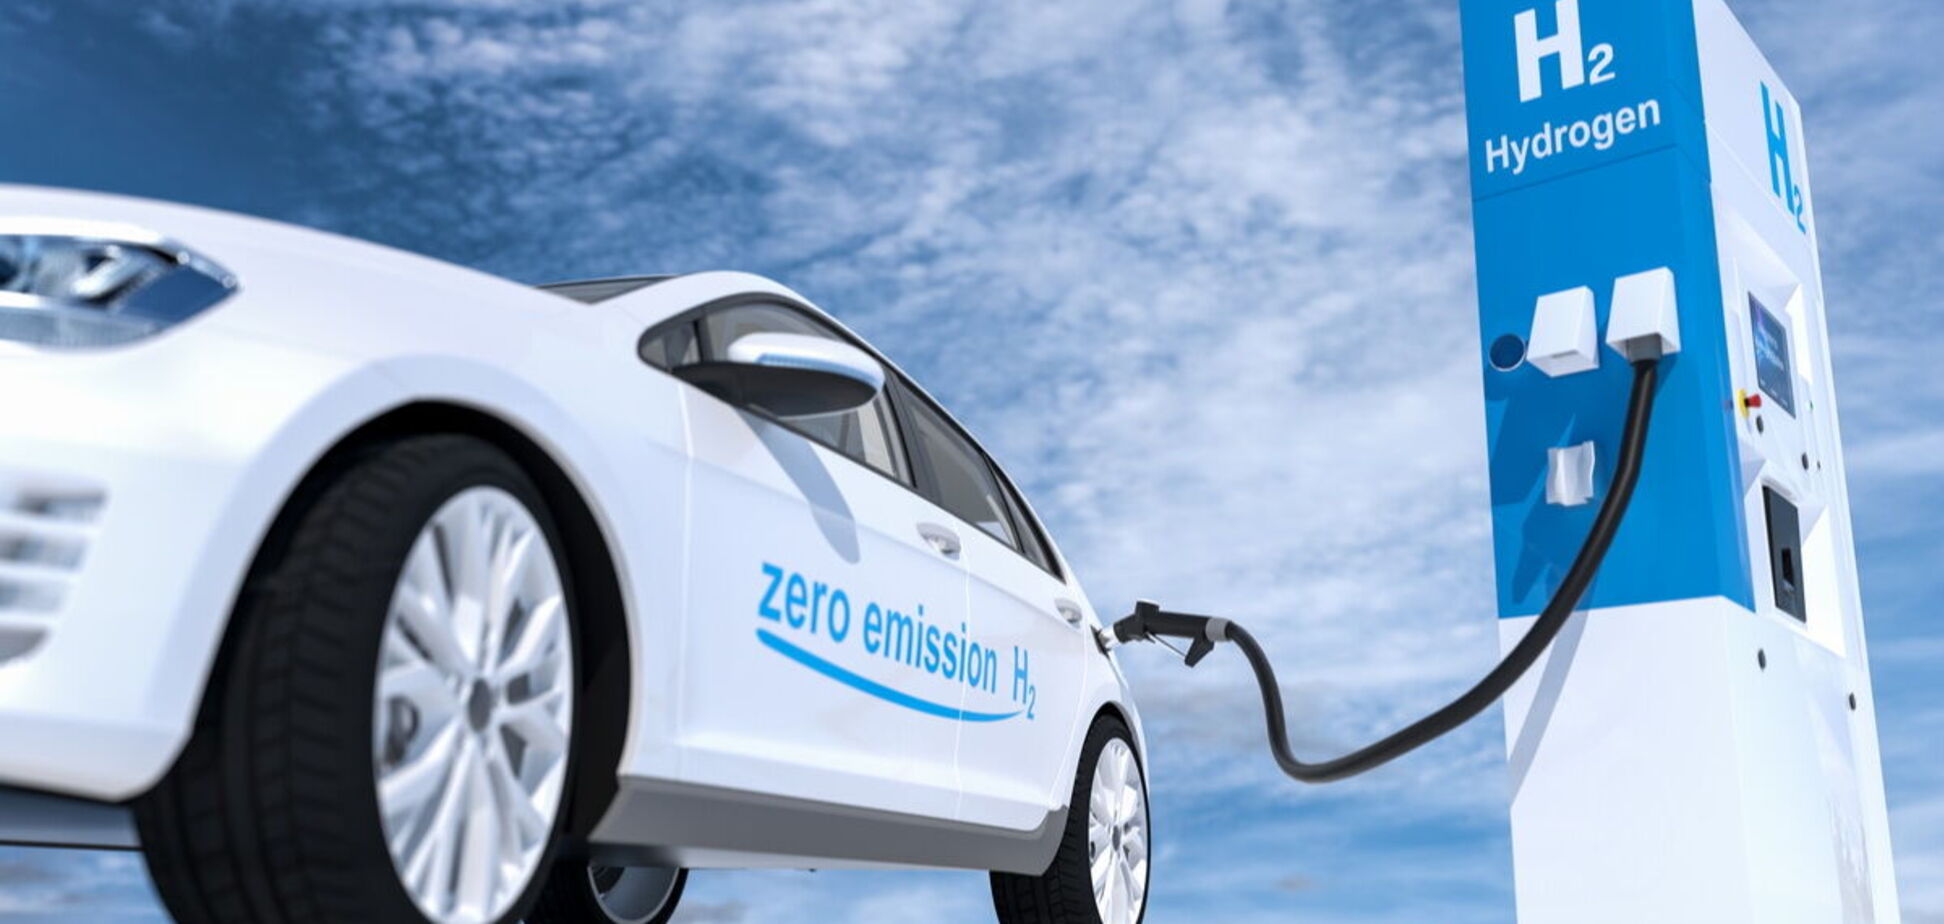 Продажи водородных легковых автомобилей за год выросли на 82%